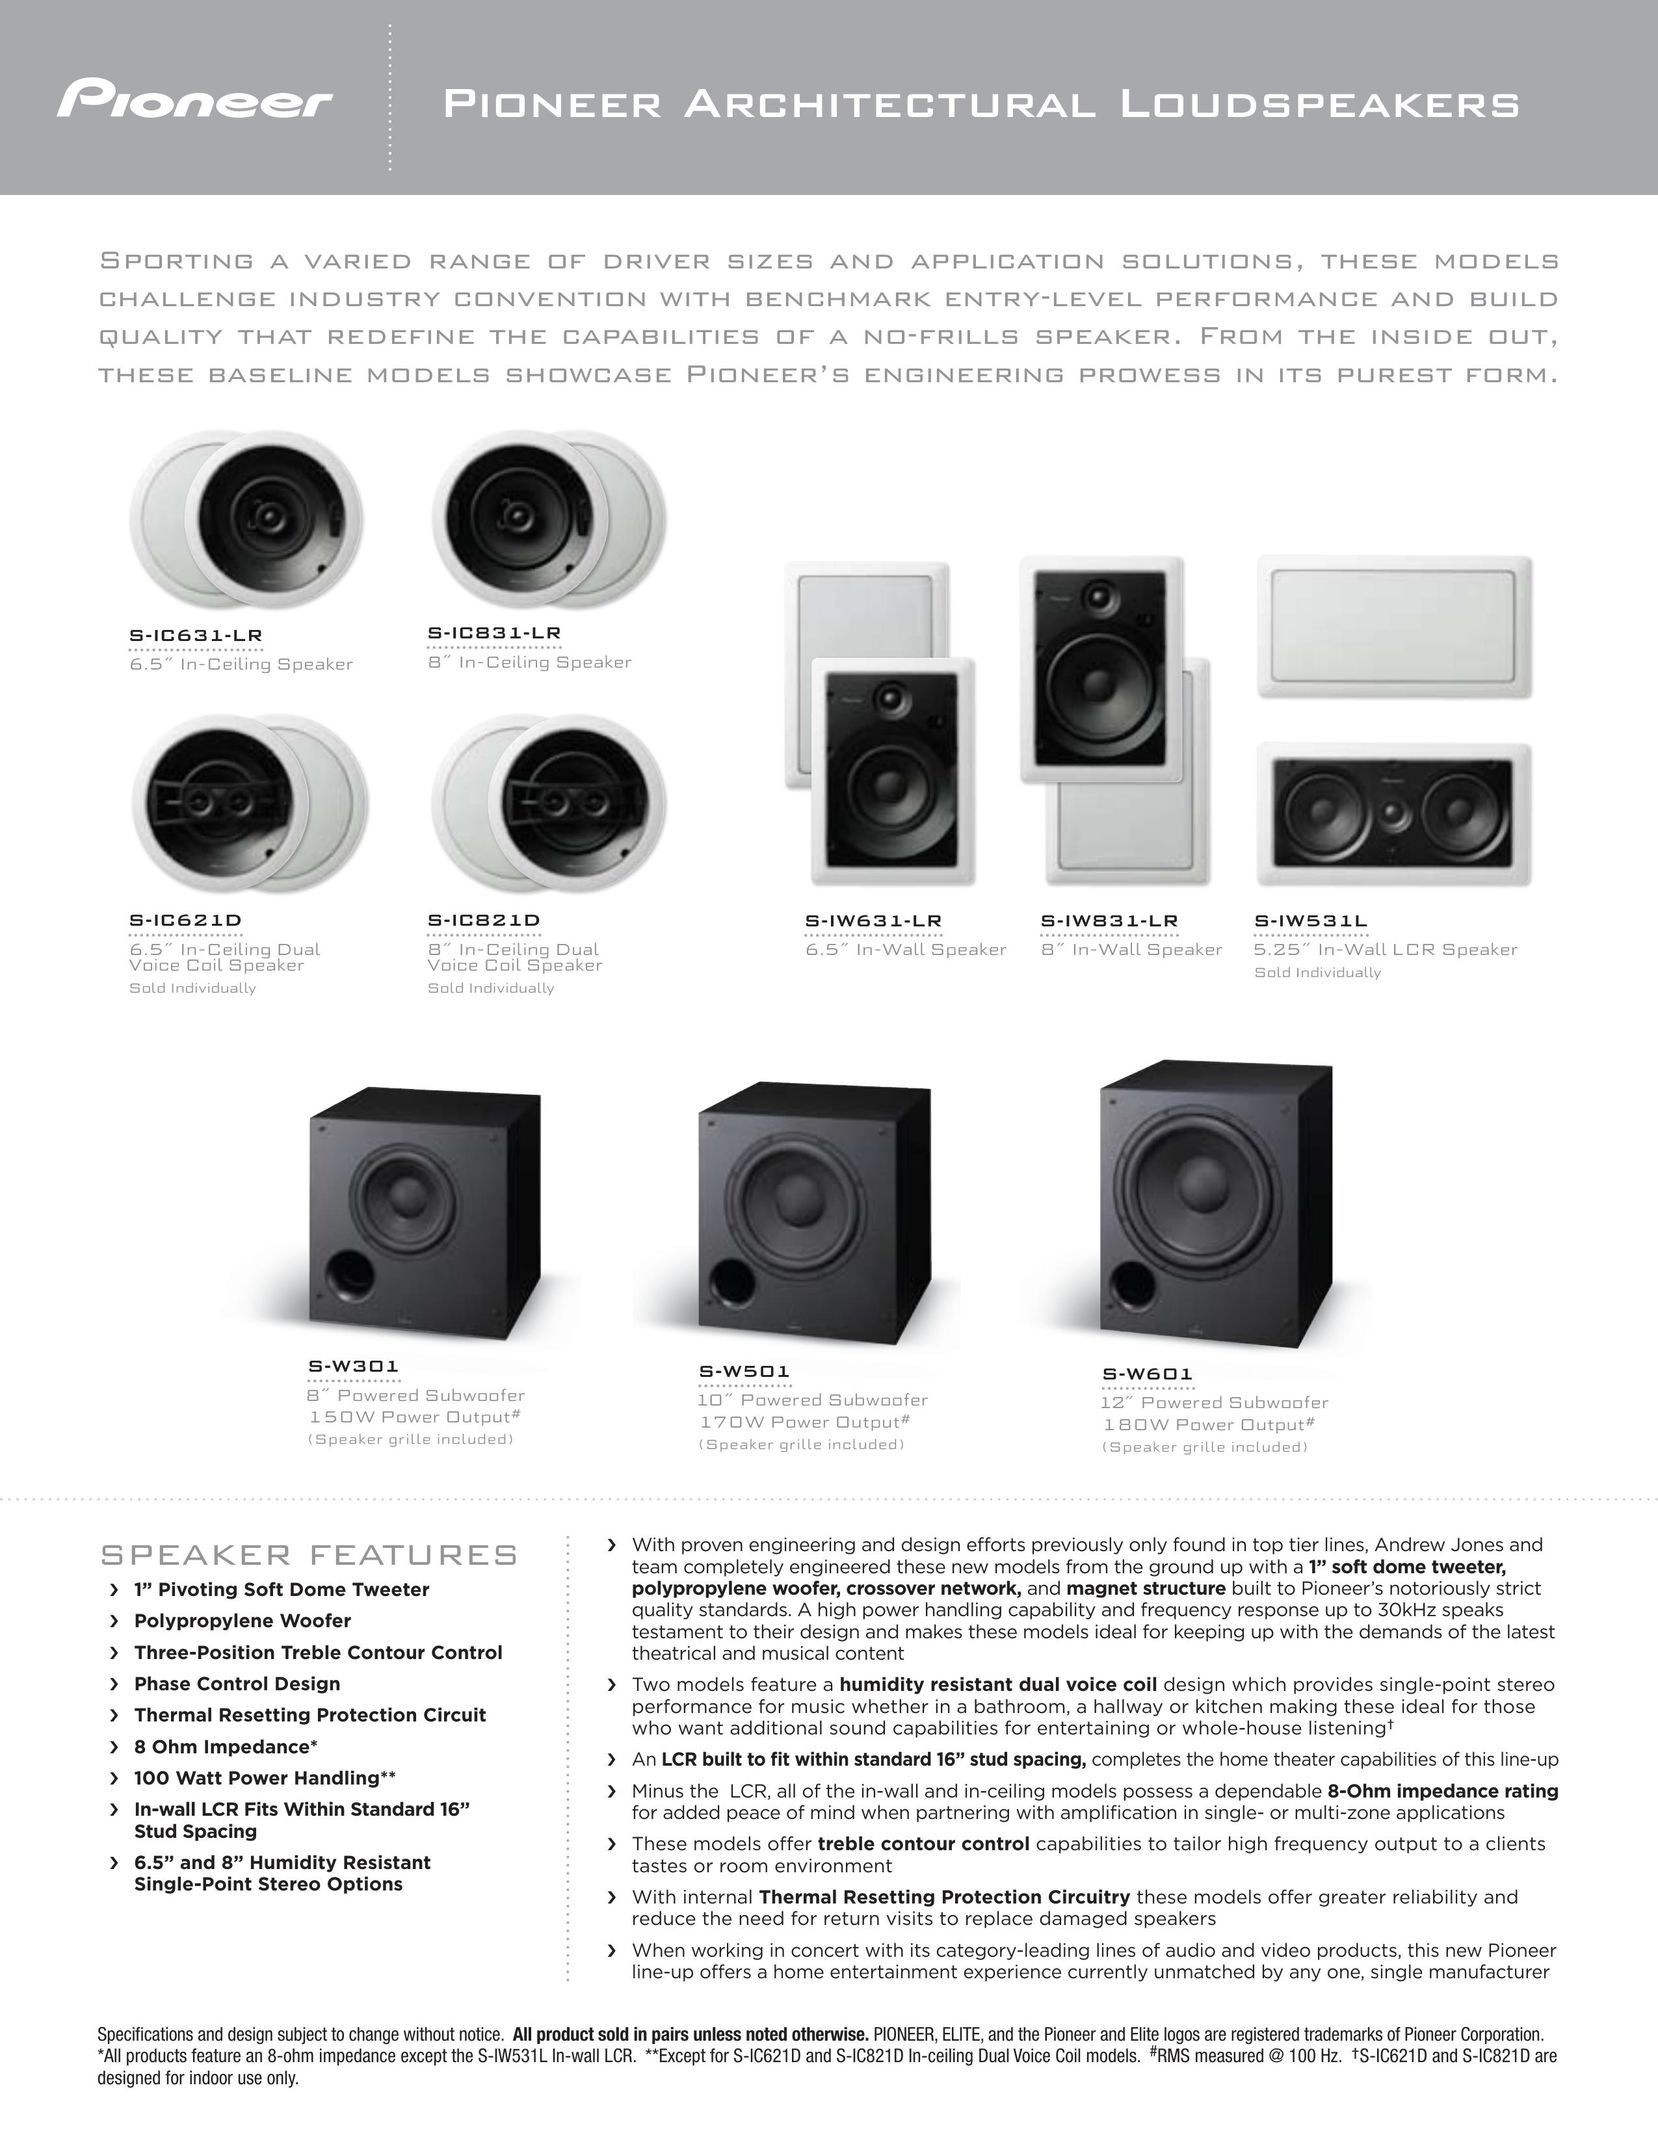 Pioneer S-IC631-LR Speaker System User Manual